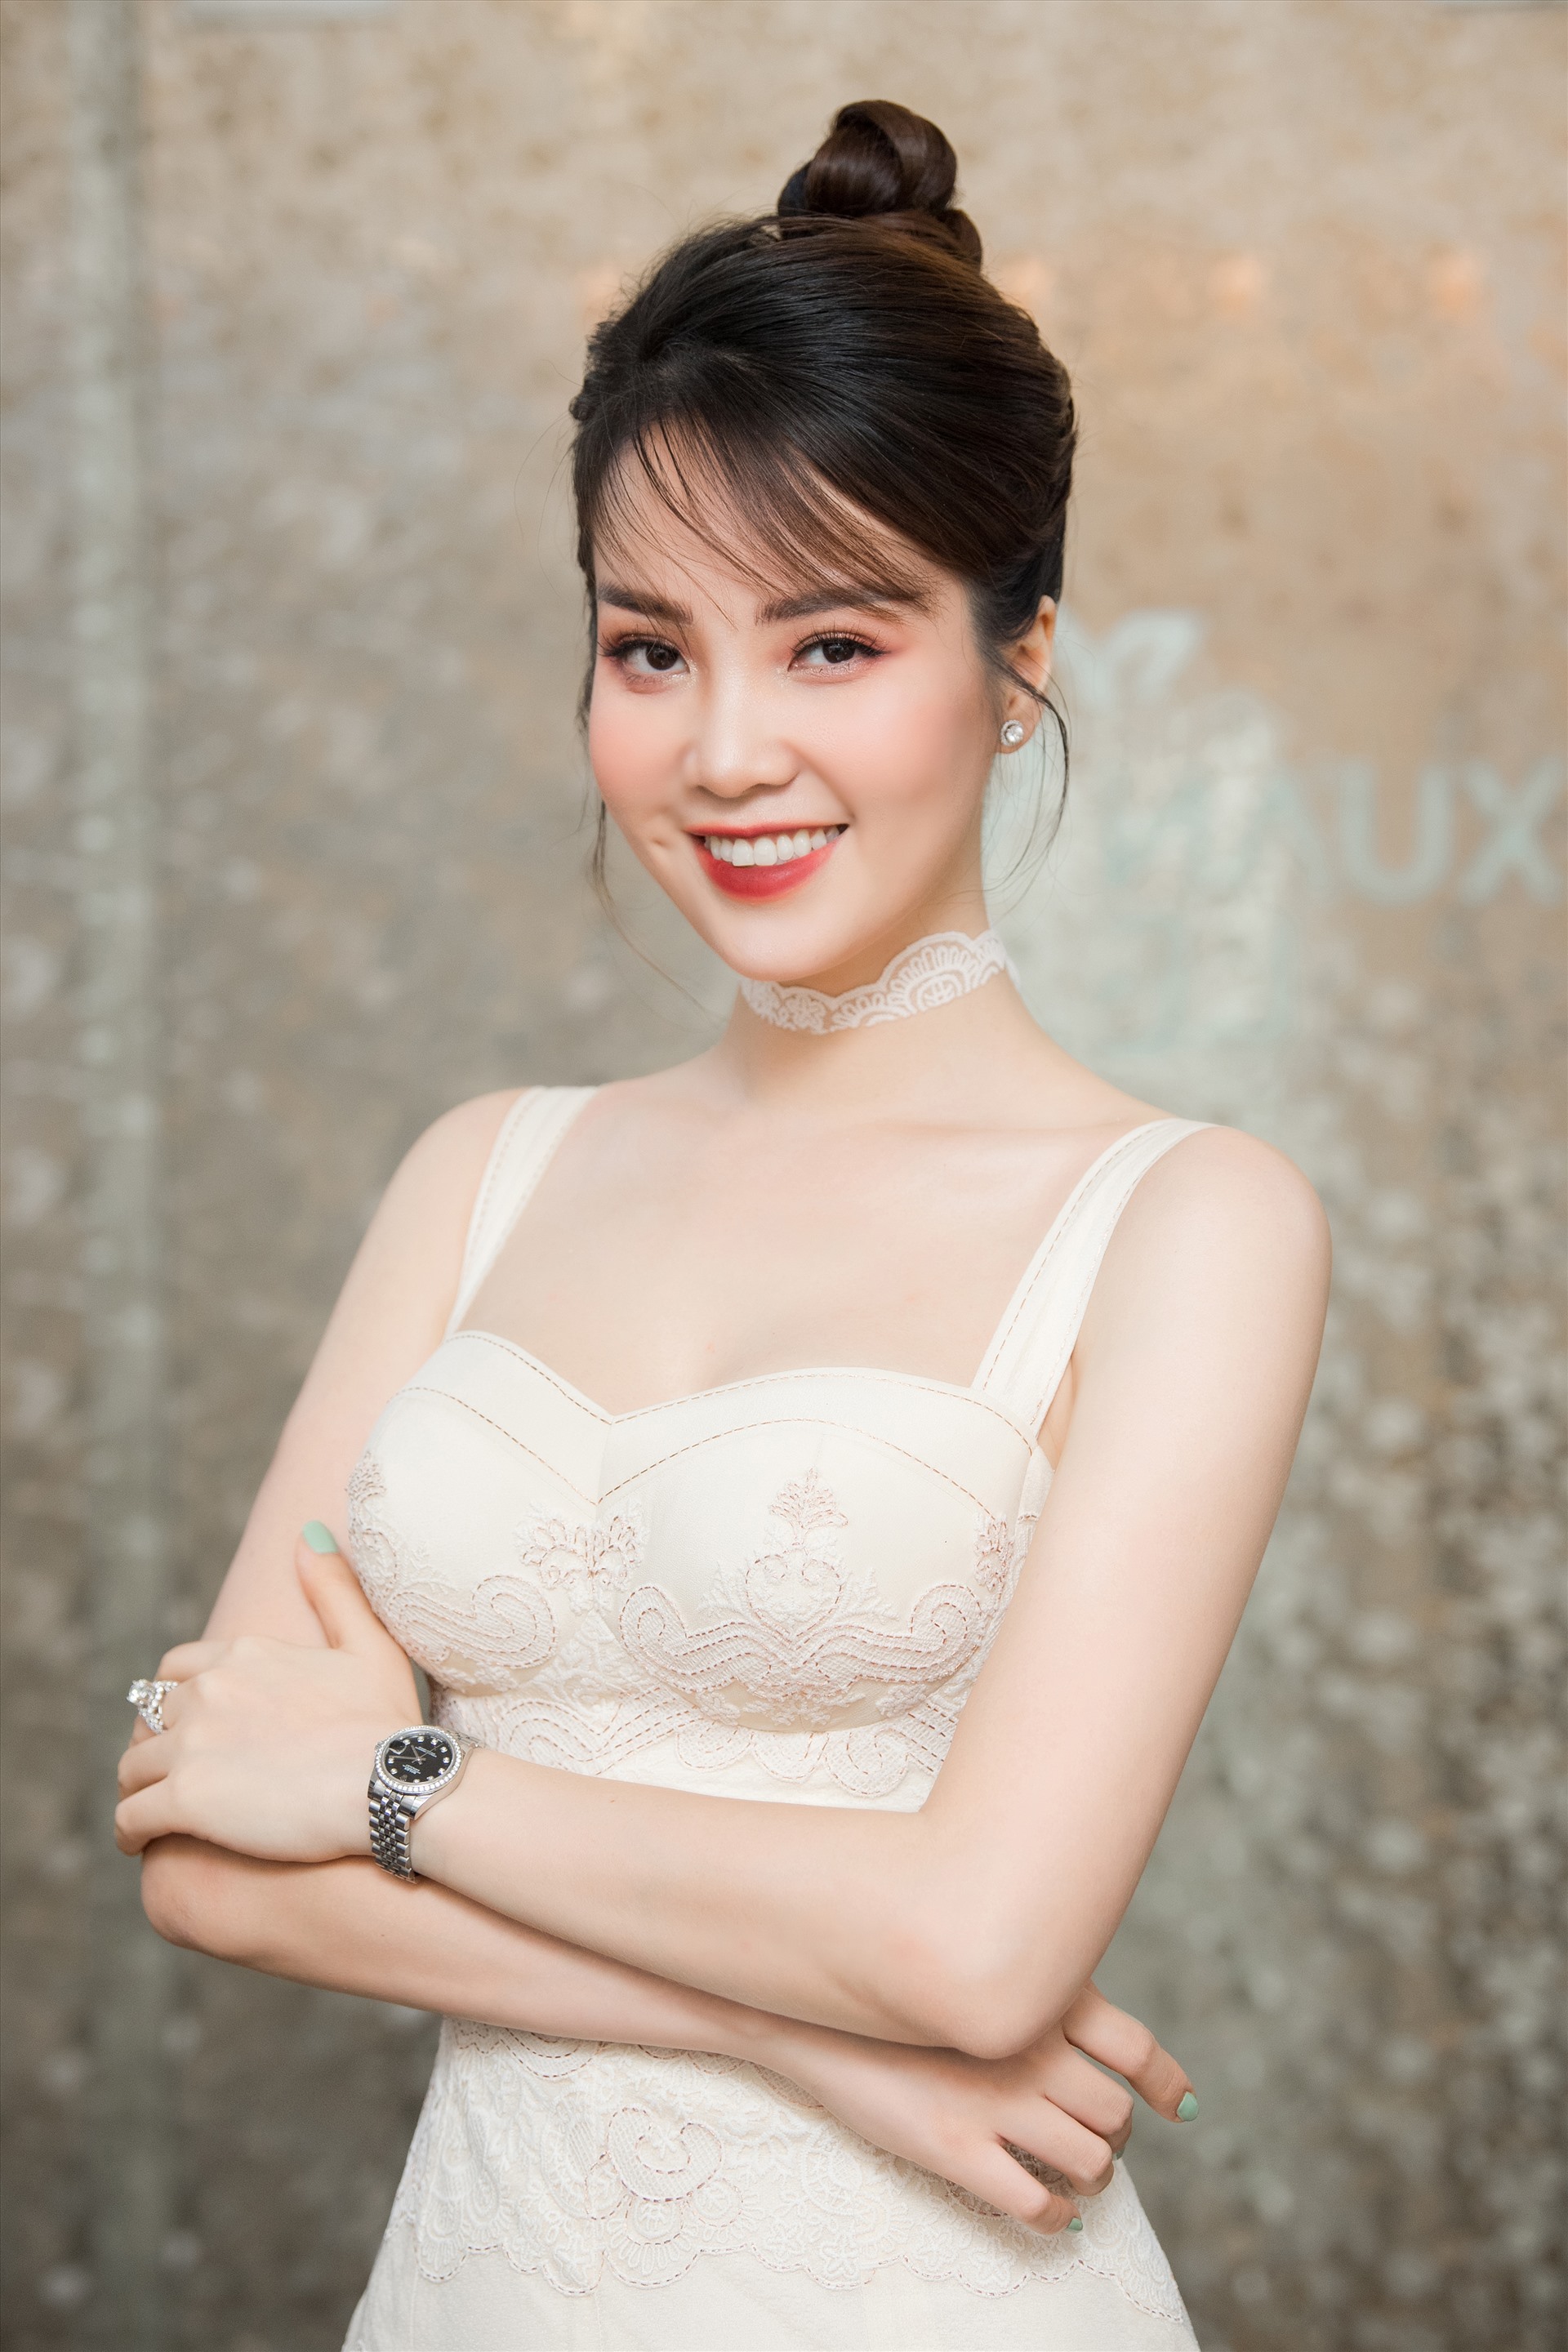 Thuỵ Vân là người được BTC cuộc thi Hoa hậu Việt Nam tin tưởng mời làm người dẫn chương trình nhiều kỳ Hoa hậu Việt Nam. Ảnh: Sen Vàng.